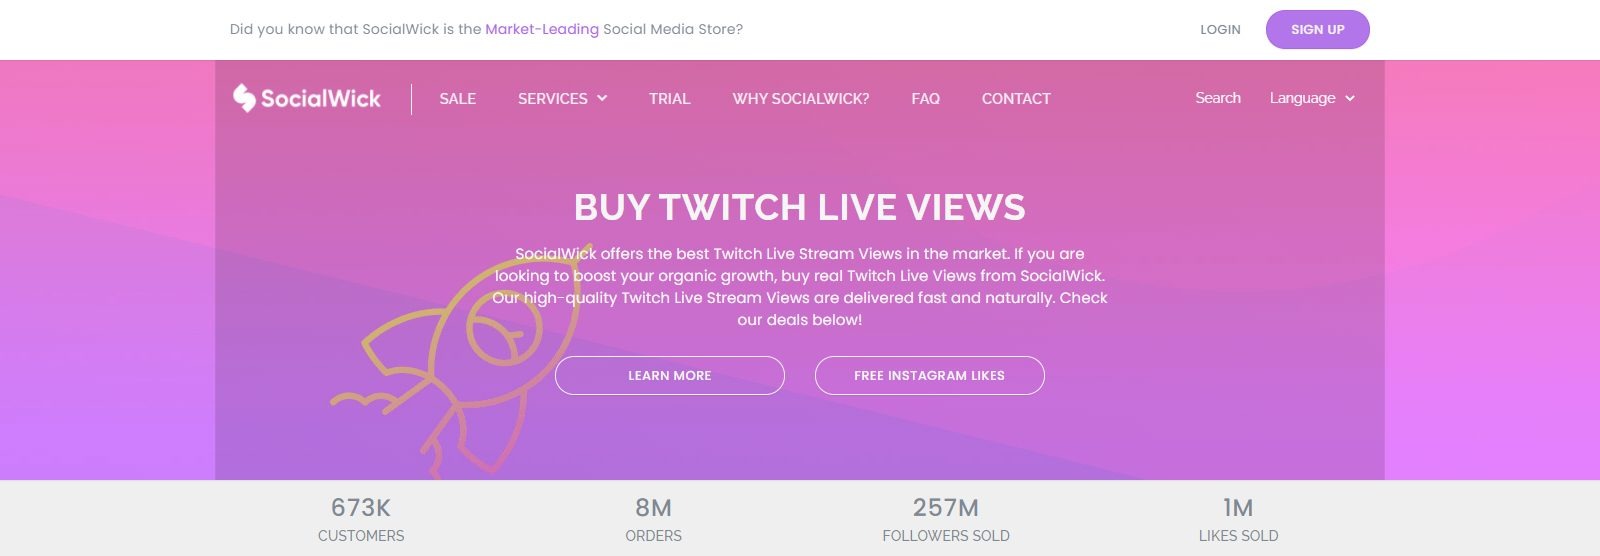 SocialWick: Buy Twitch Live Views